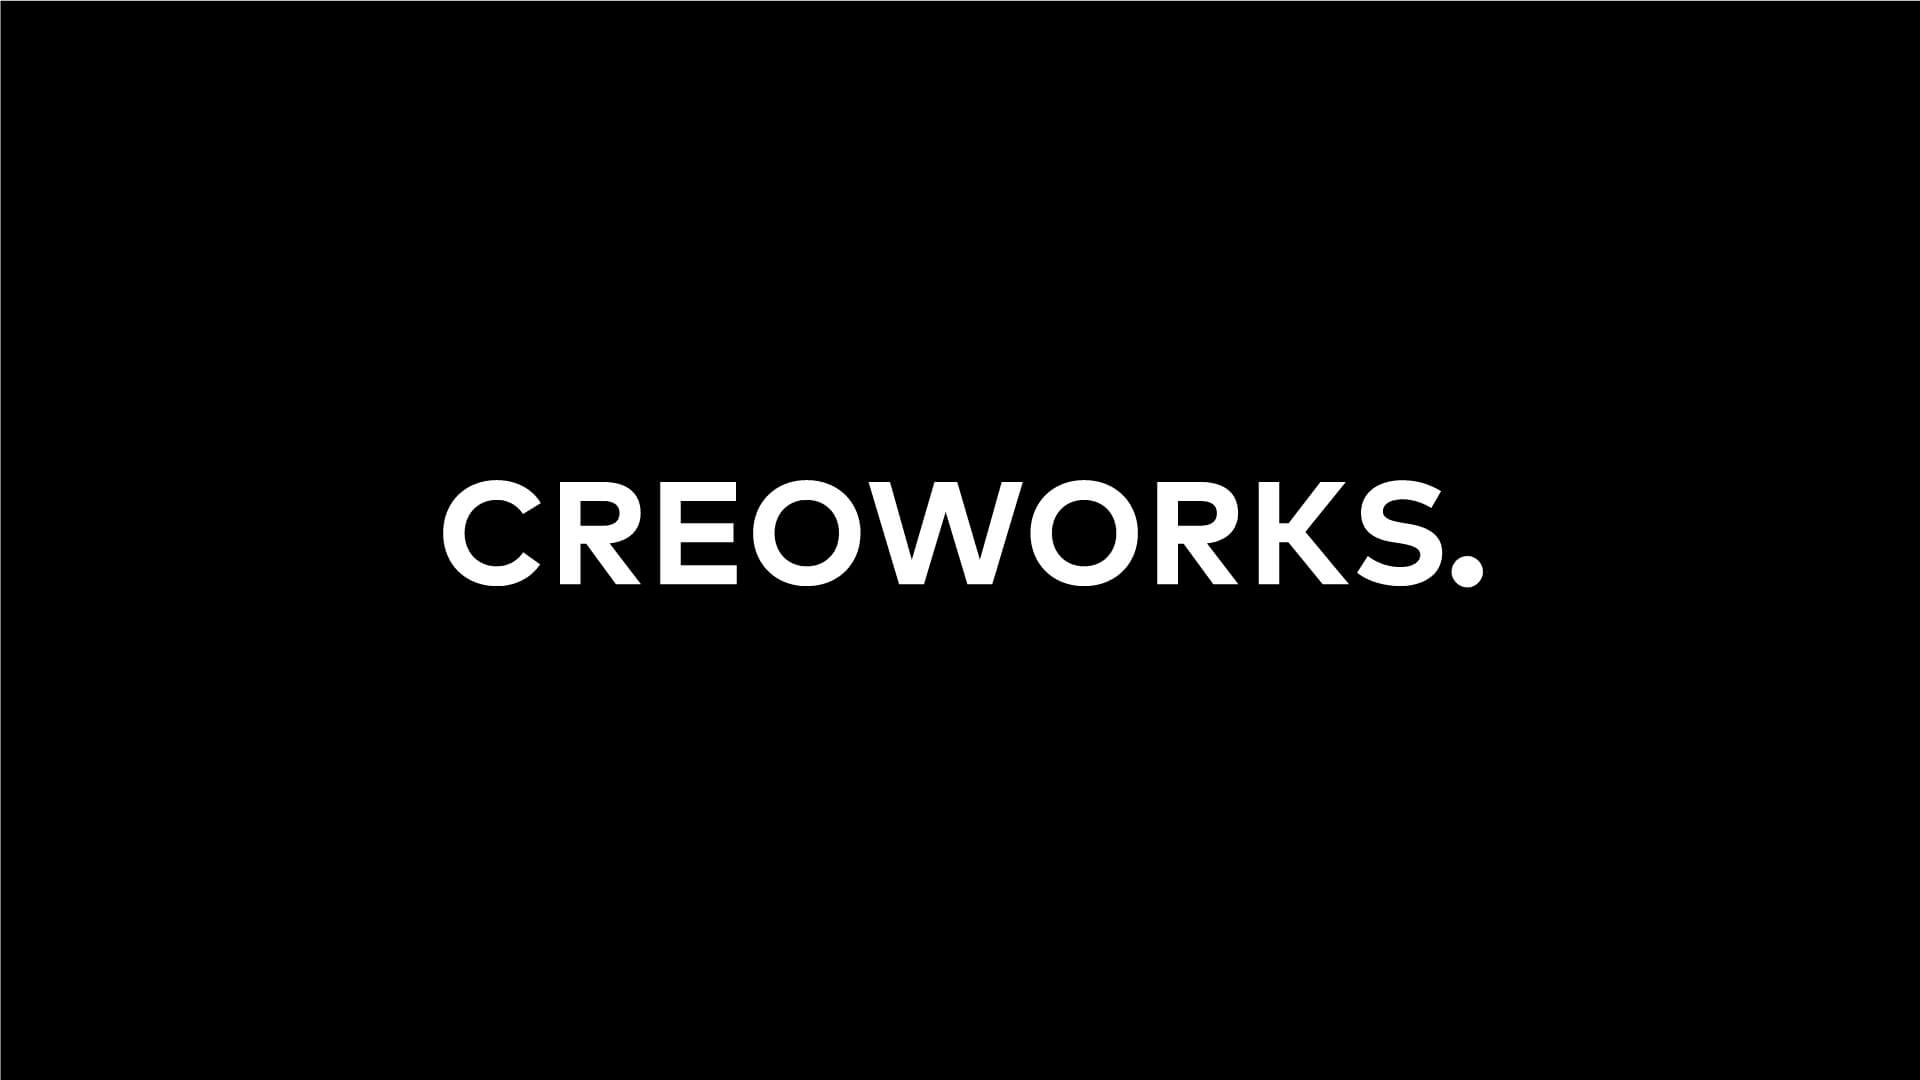 Creoworks-wordmark